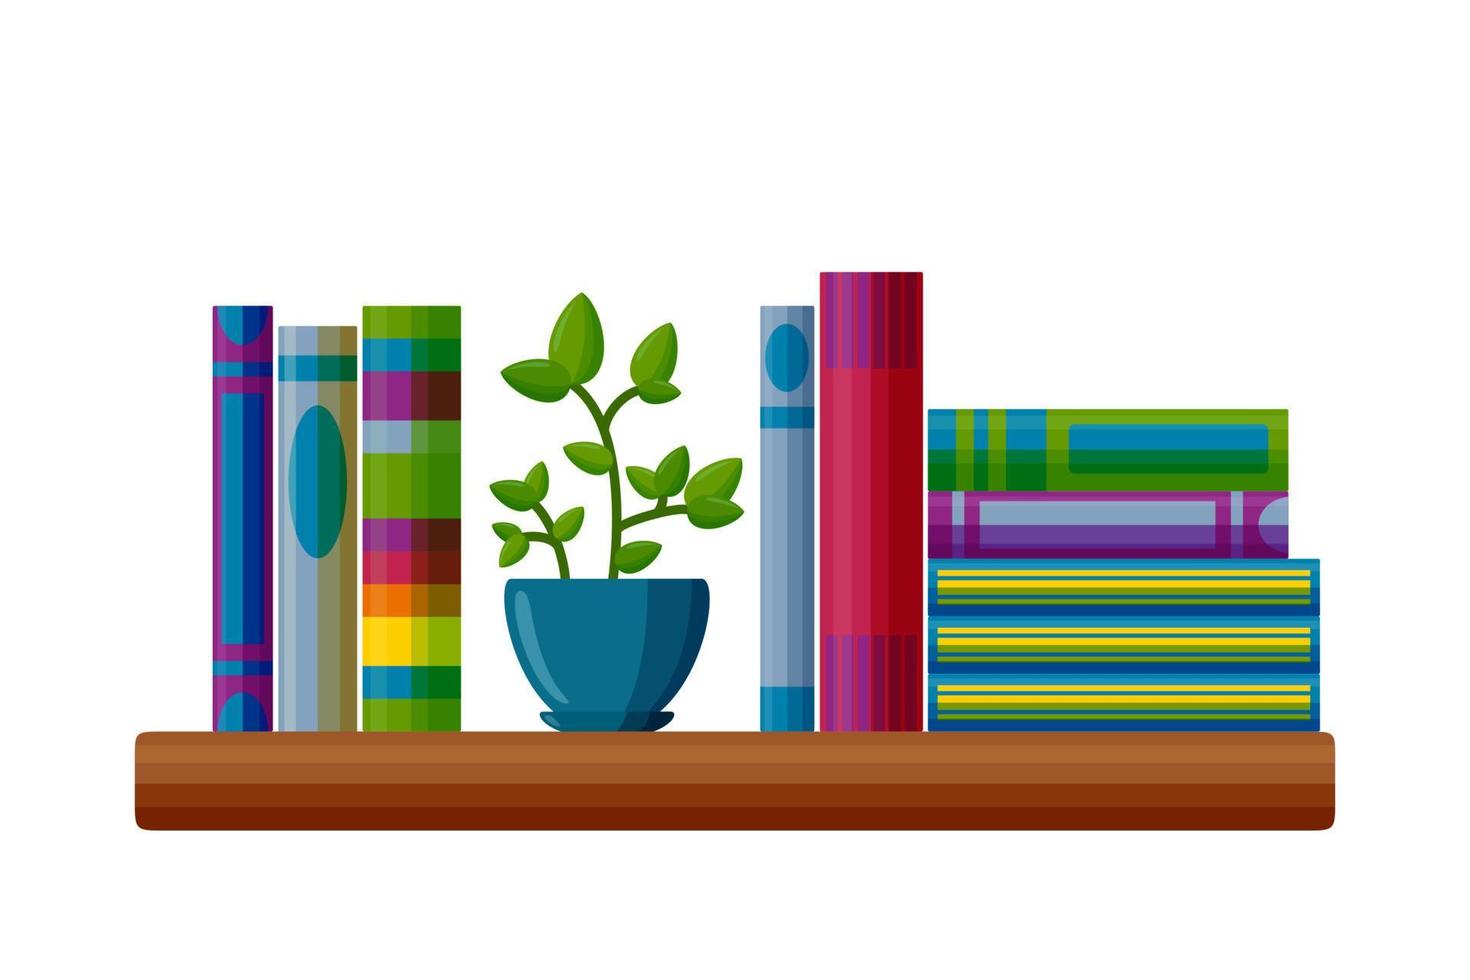 étagère avec livres et plante en pot. livres en style cartoon. illustration vectorielle vecteur